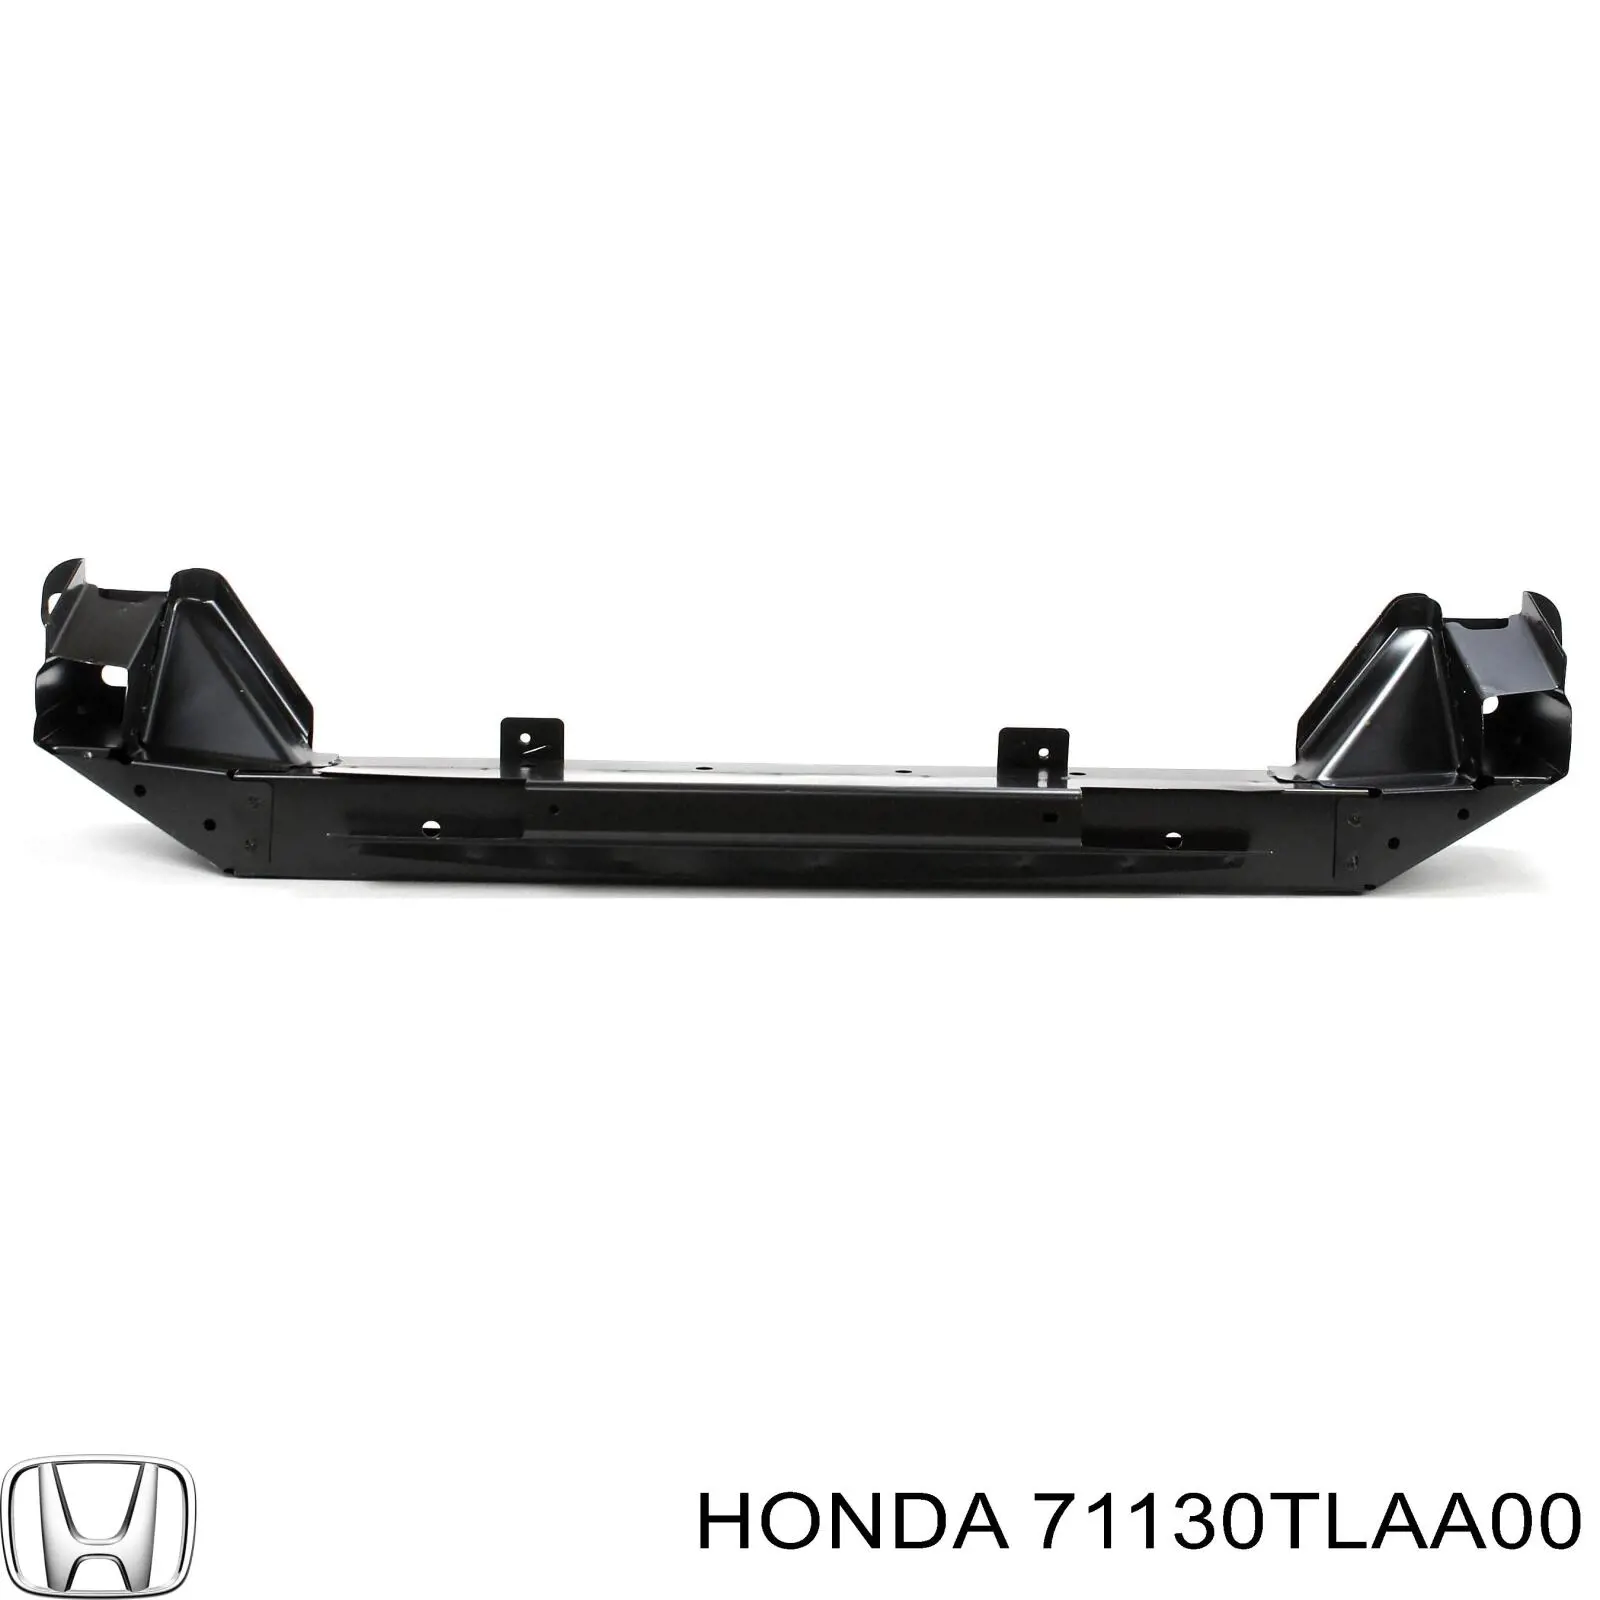 Усилитель переднего бампера Honda CR-V RW, RT (Хонда СРВ)